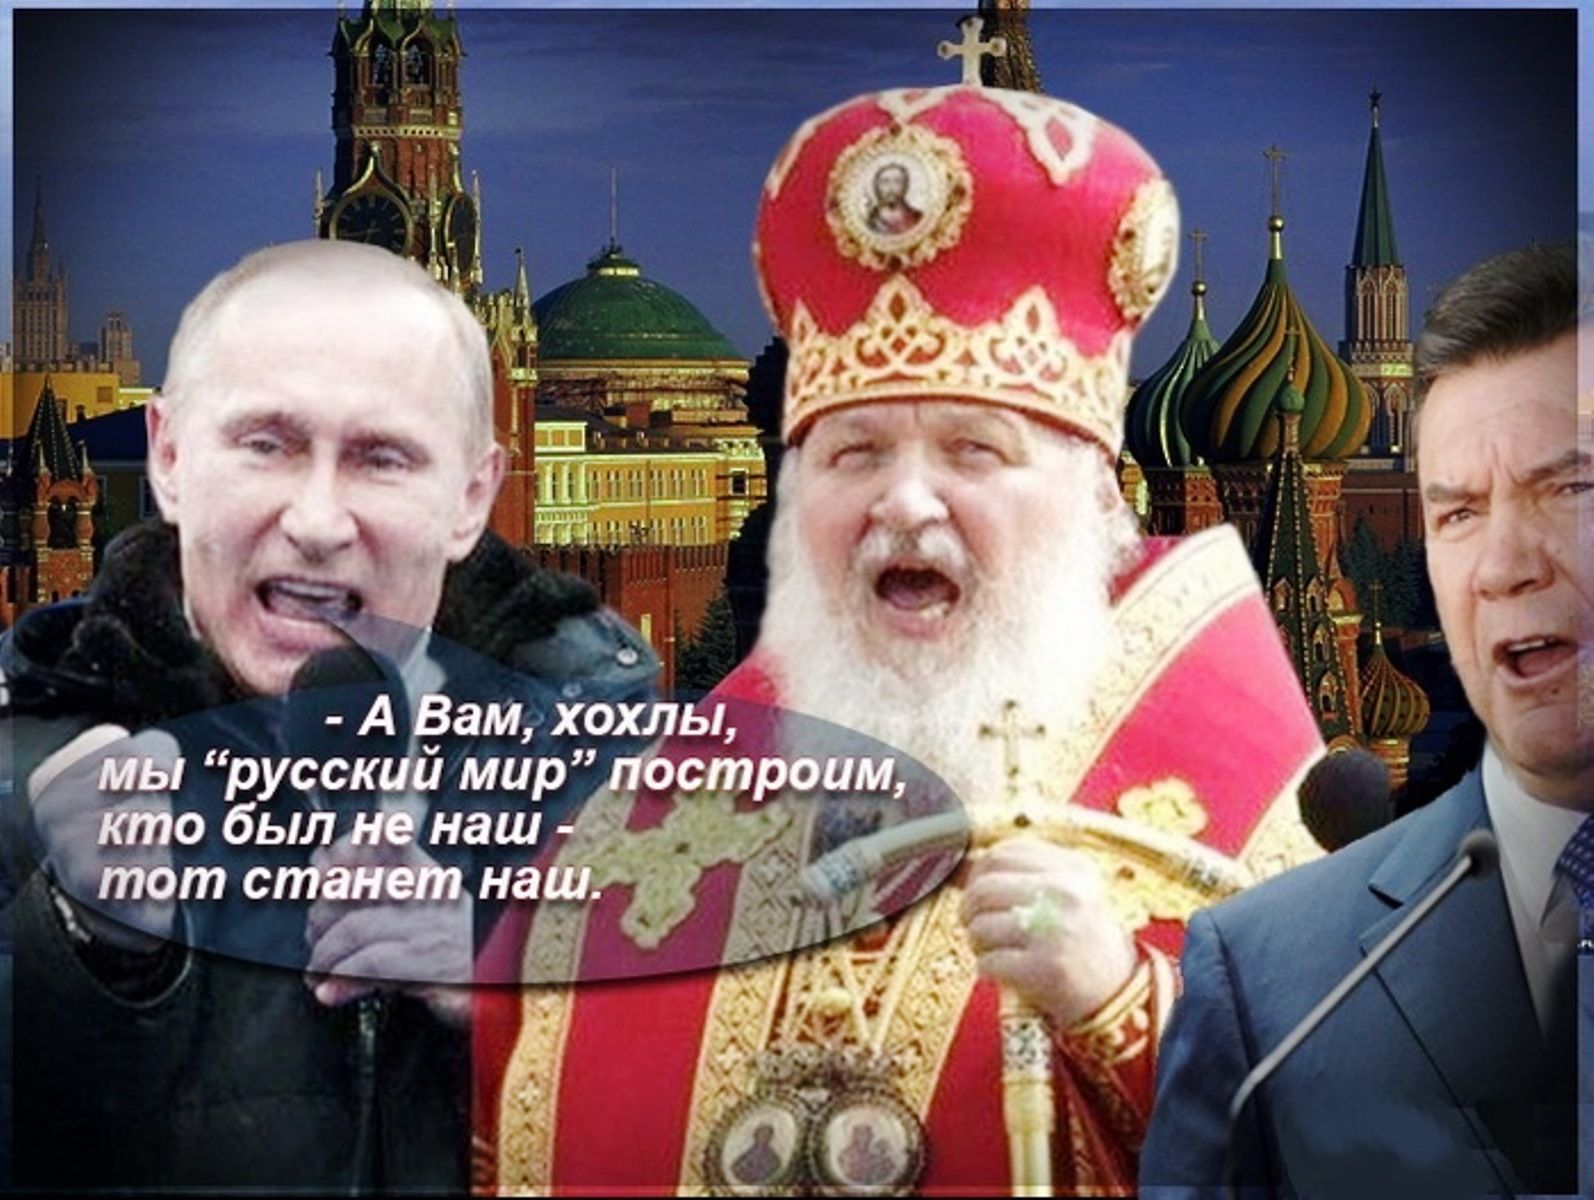 Карикатура на Путина и Патриарха Кирилла